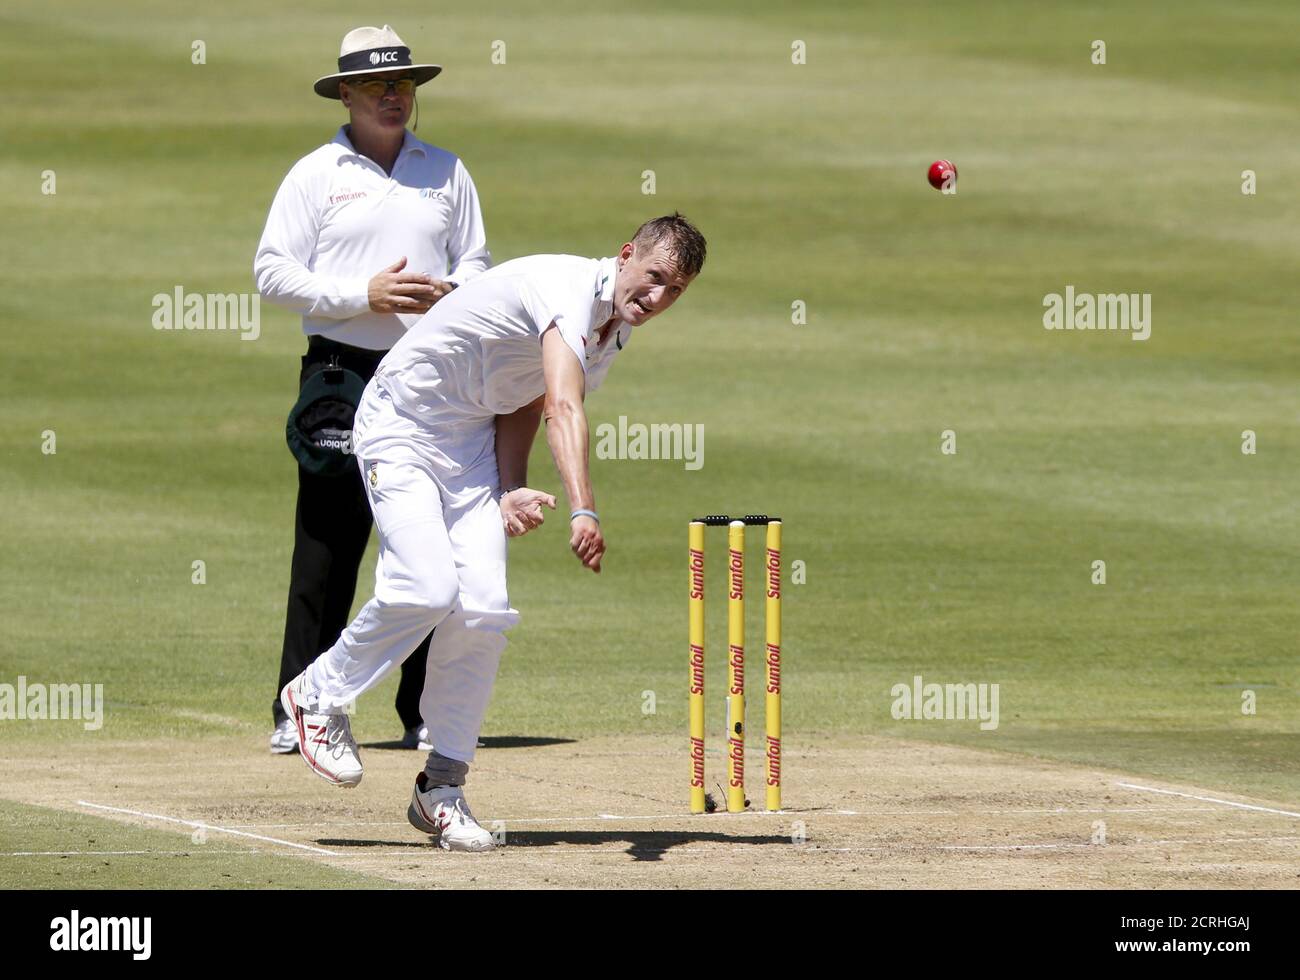 Chris Morris, d'Afrique du Sud, se batte lors du deuxième match de cricket contre l'Angleterre, au Cap, en Afrique du Sud, le 2 janvier 2016. REUTERS/Mike Hutchings Banque D'Images